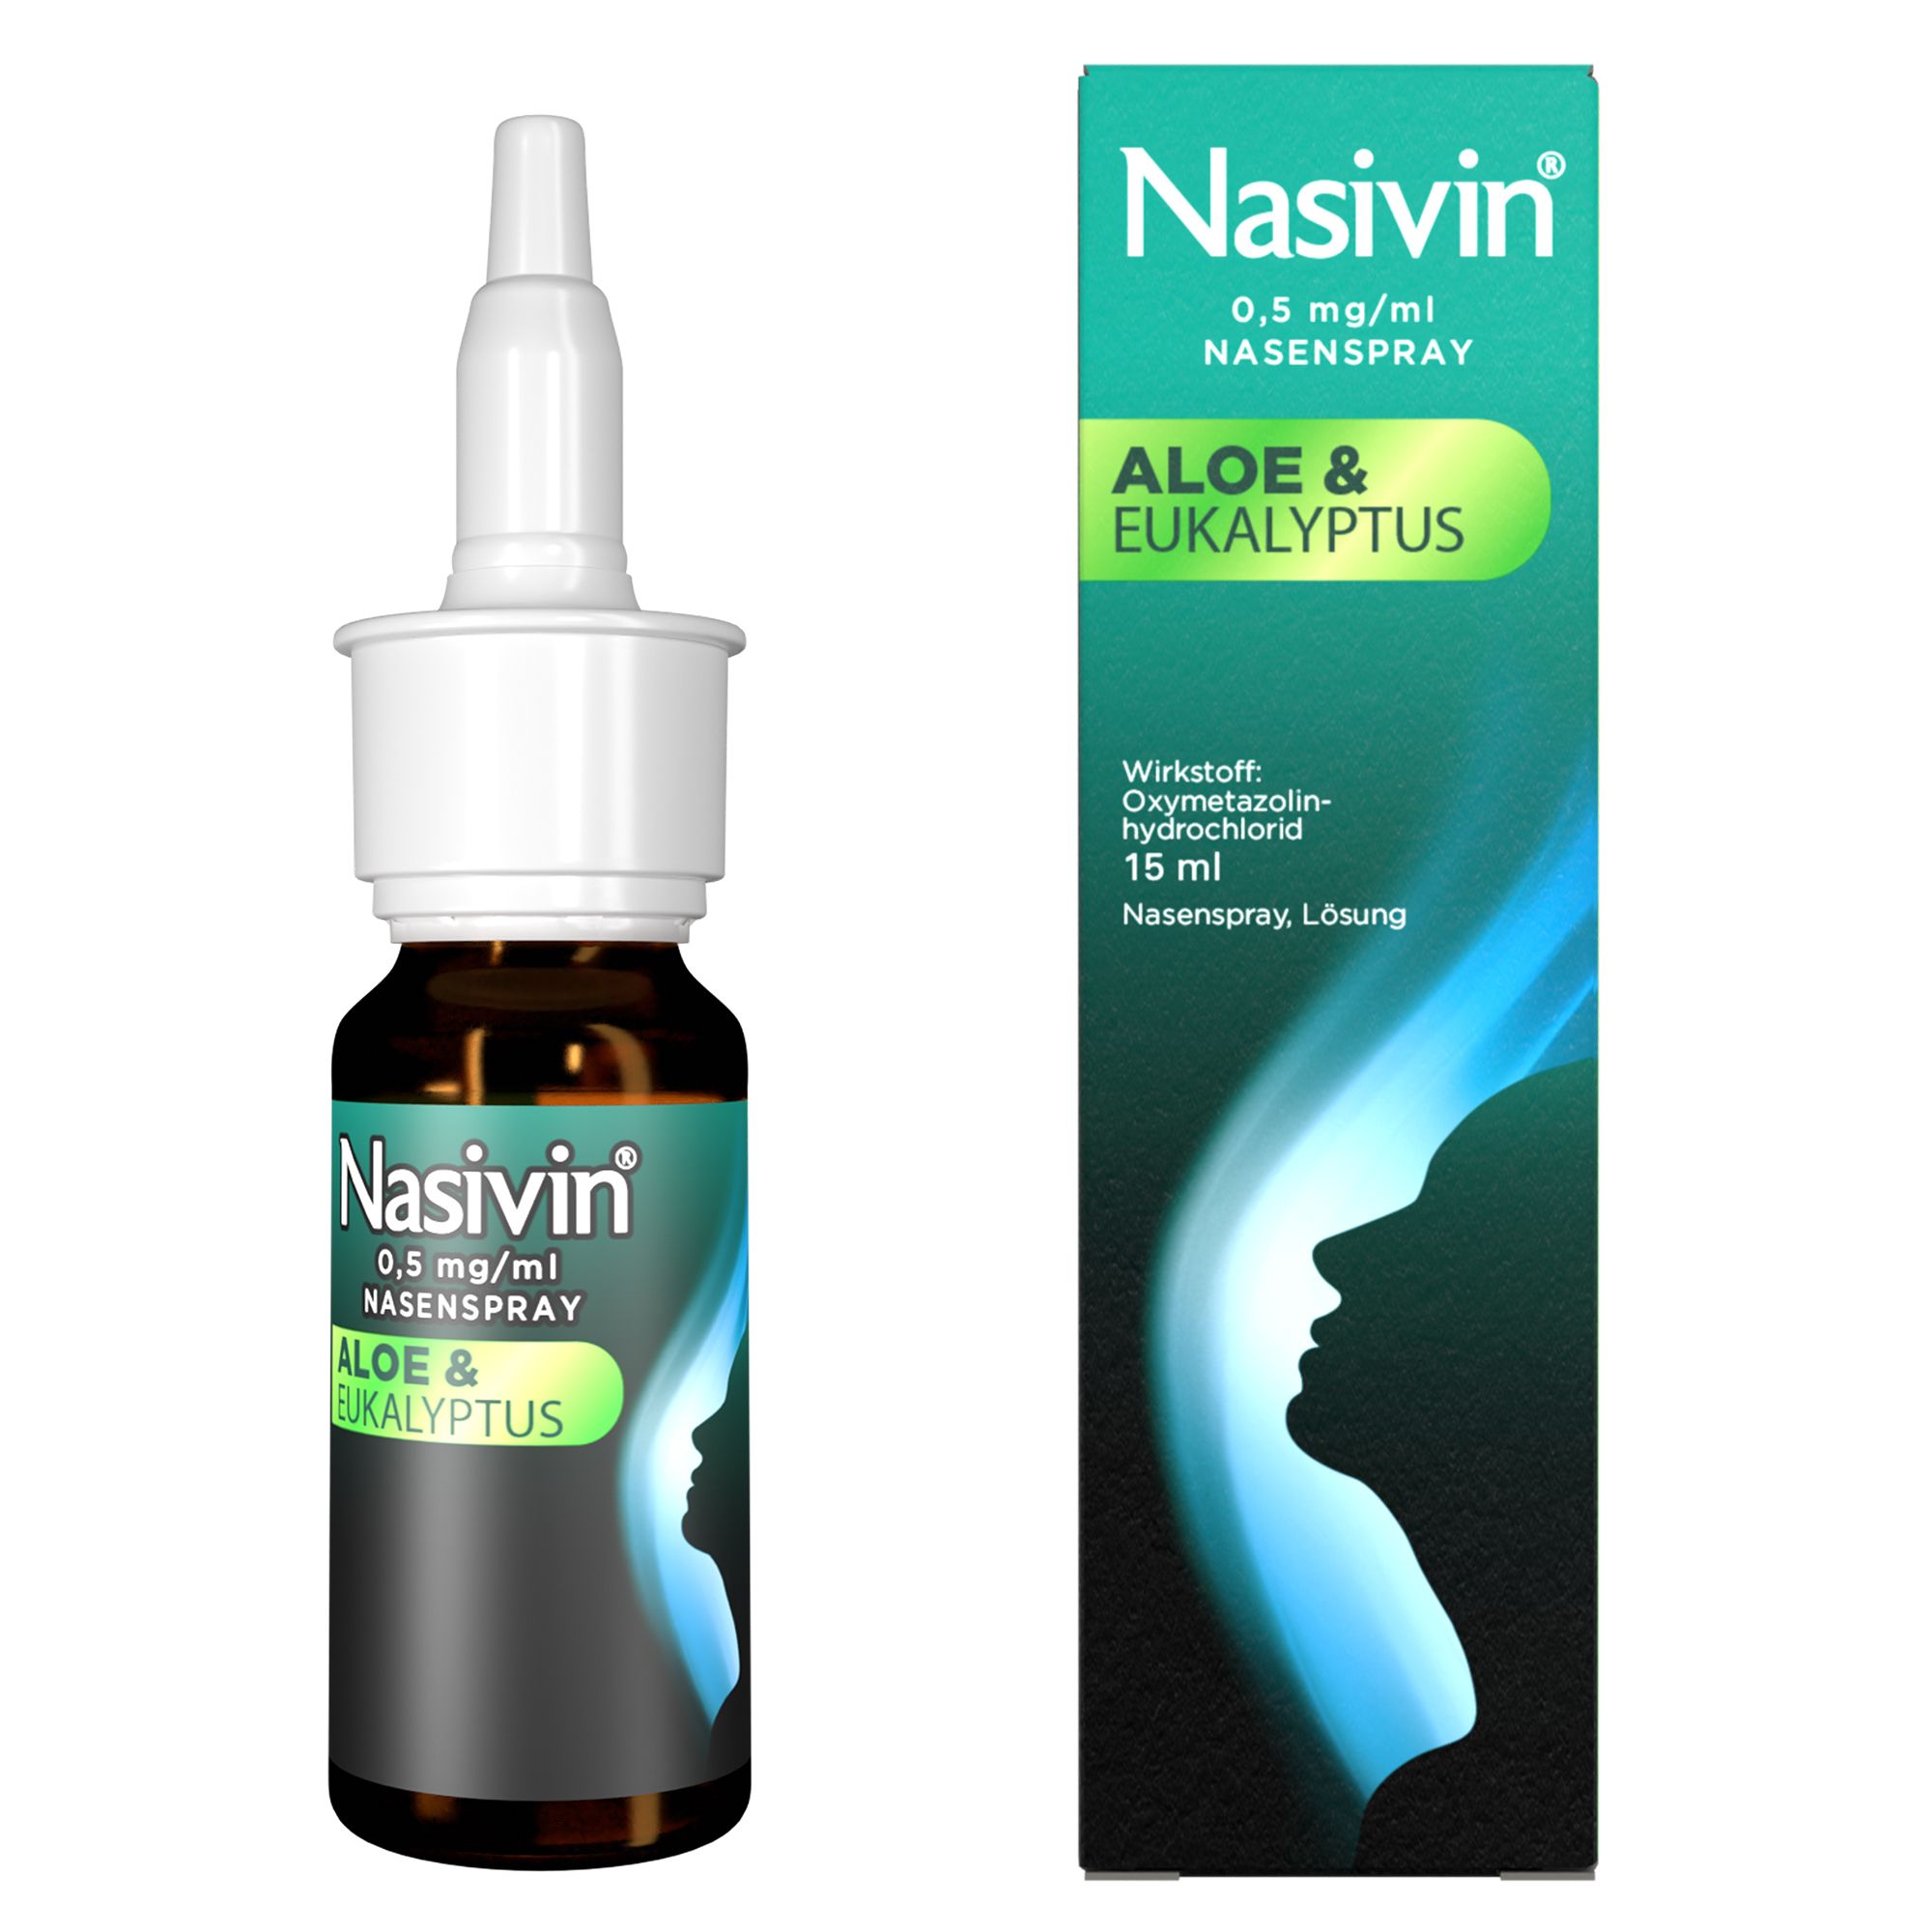 Nasivin® Aloe & Eukalyptus